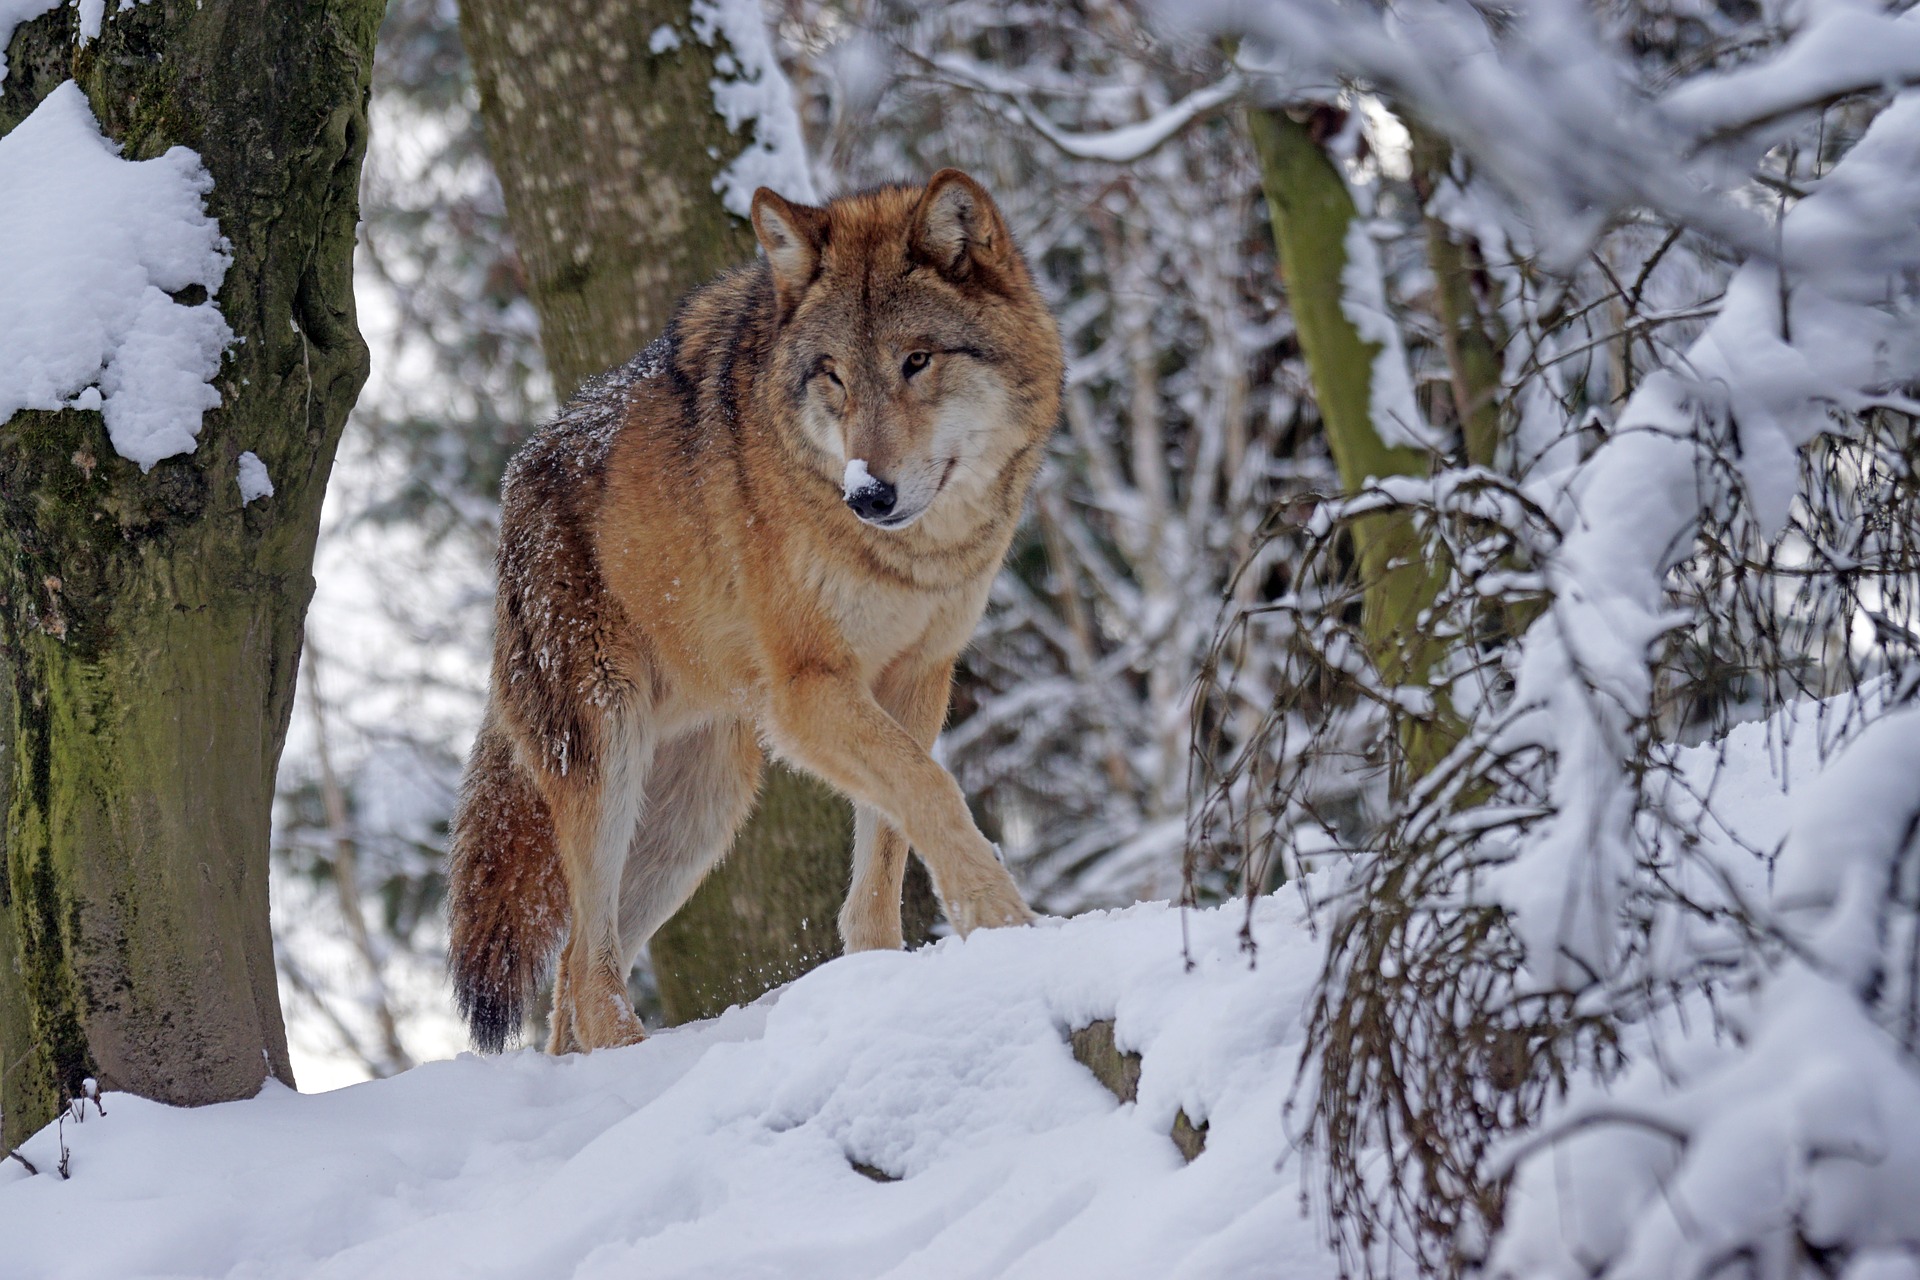 Скачать обои бесплатно Животные, Волки, Зима, Снег, Волк картинка на рабочий стол ПК